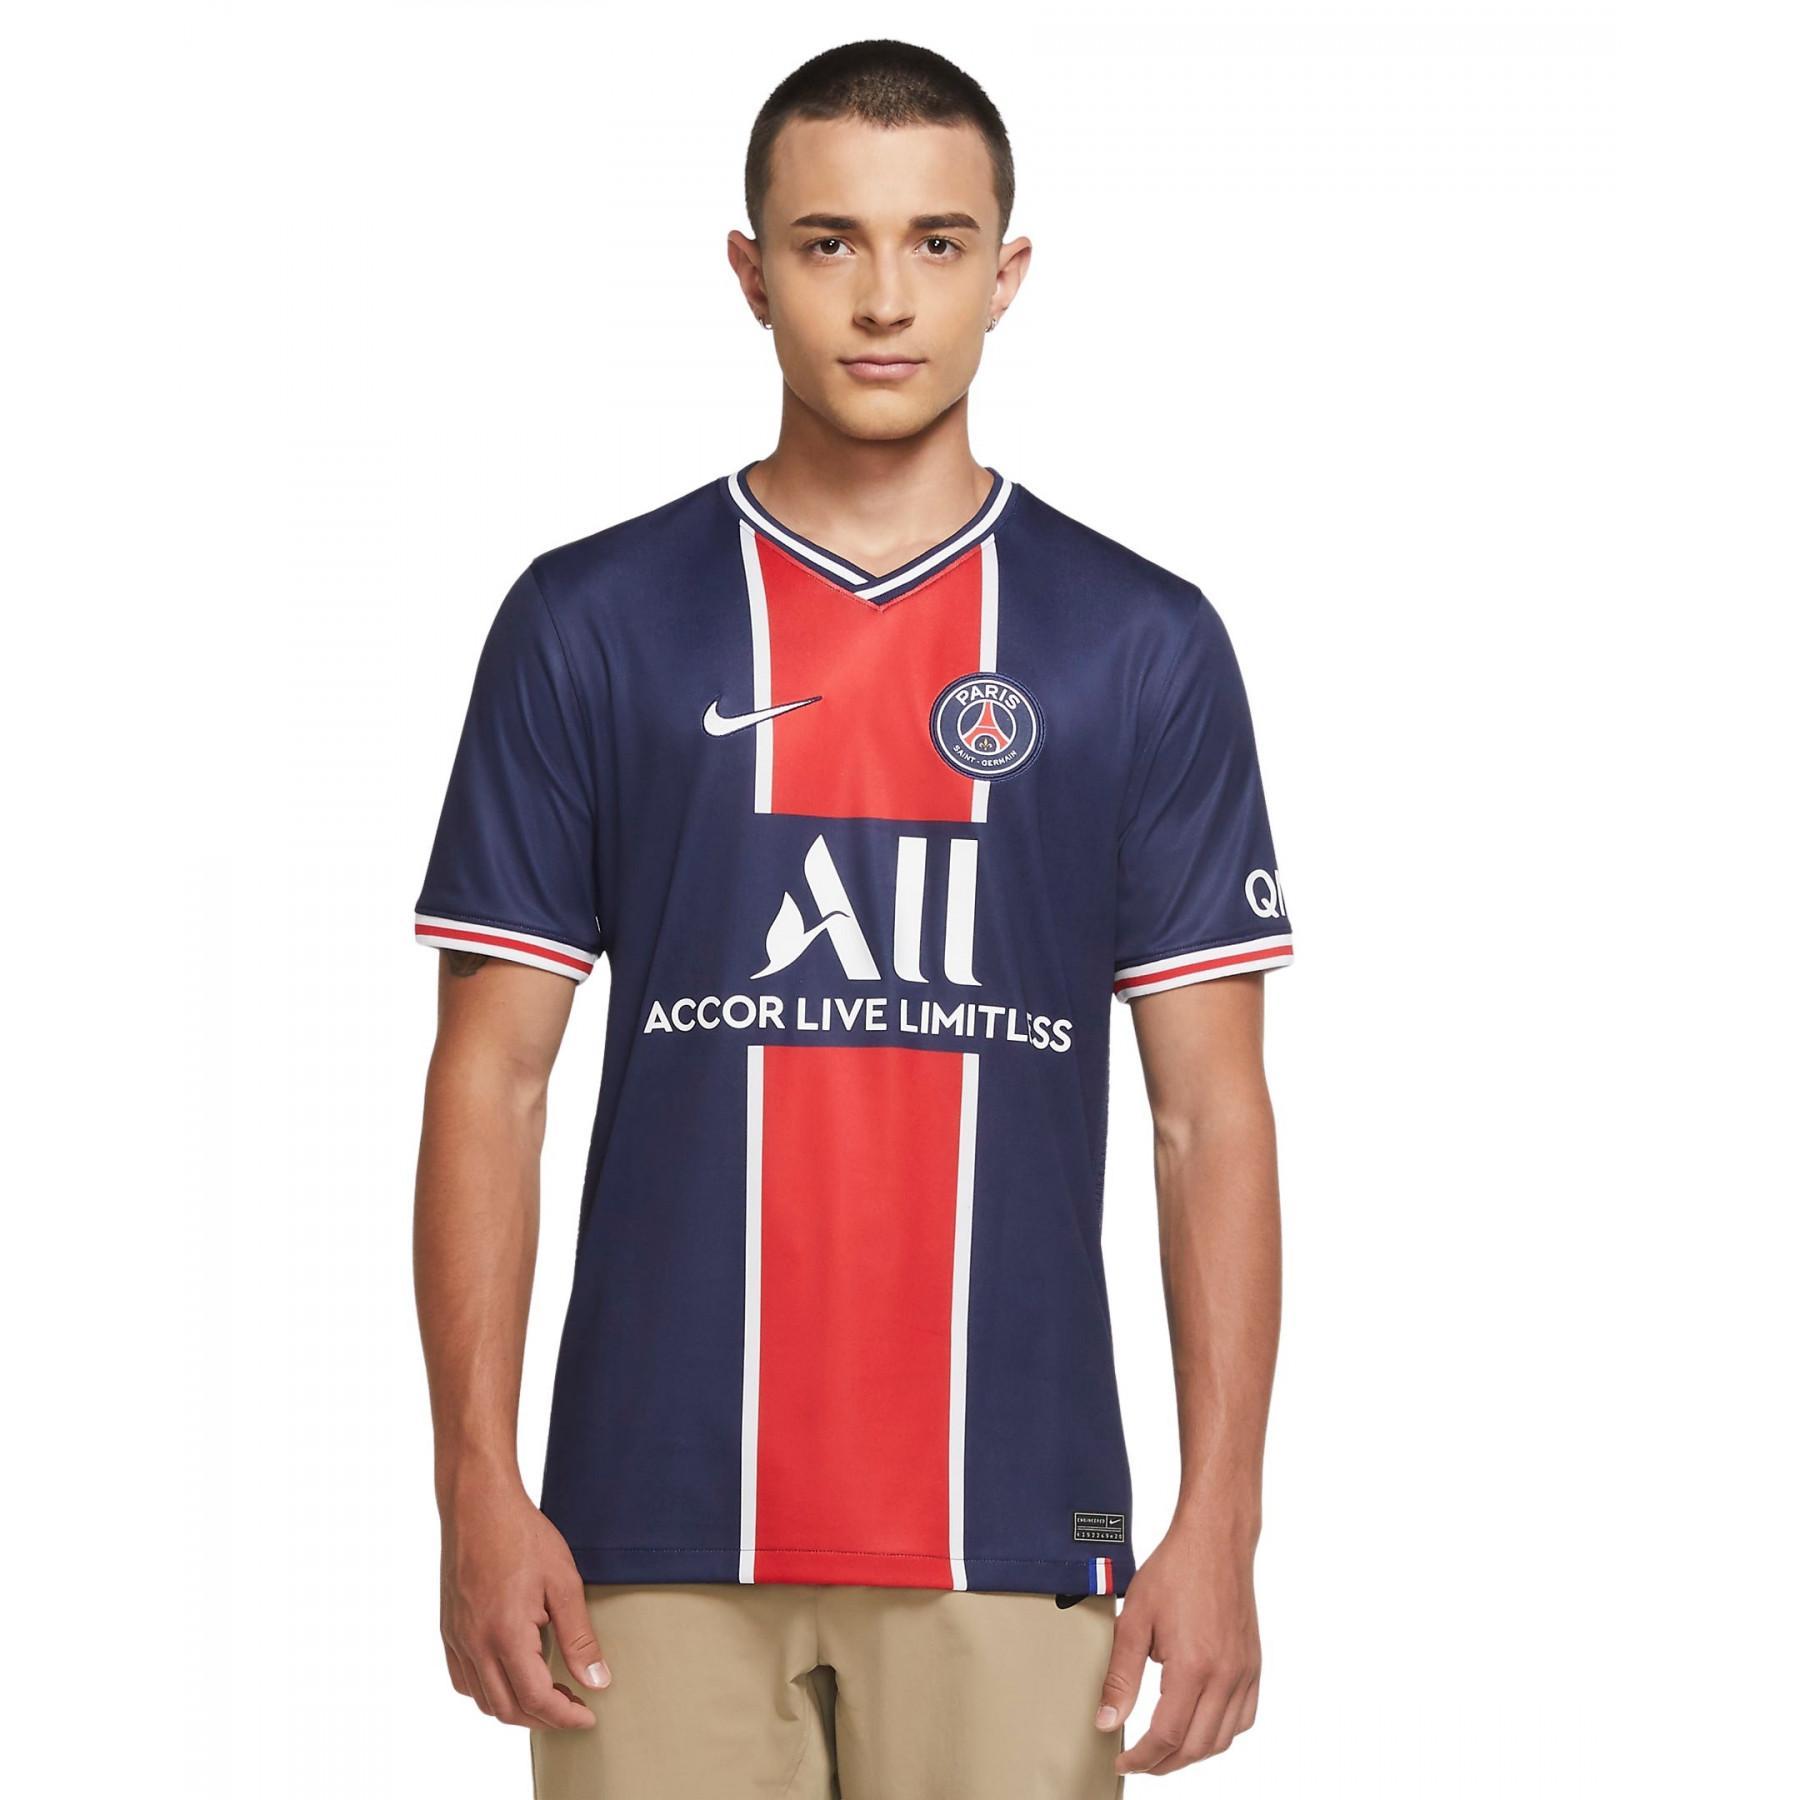 Home jersey PSG 2020/21 - Paris Saint-Germain - Ligue 1 - Fans